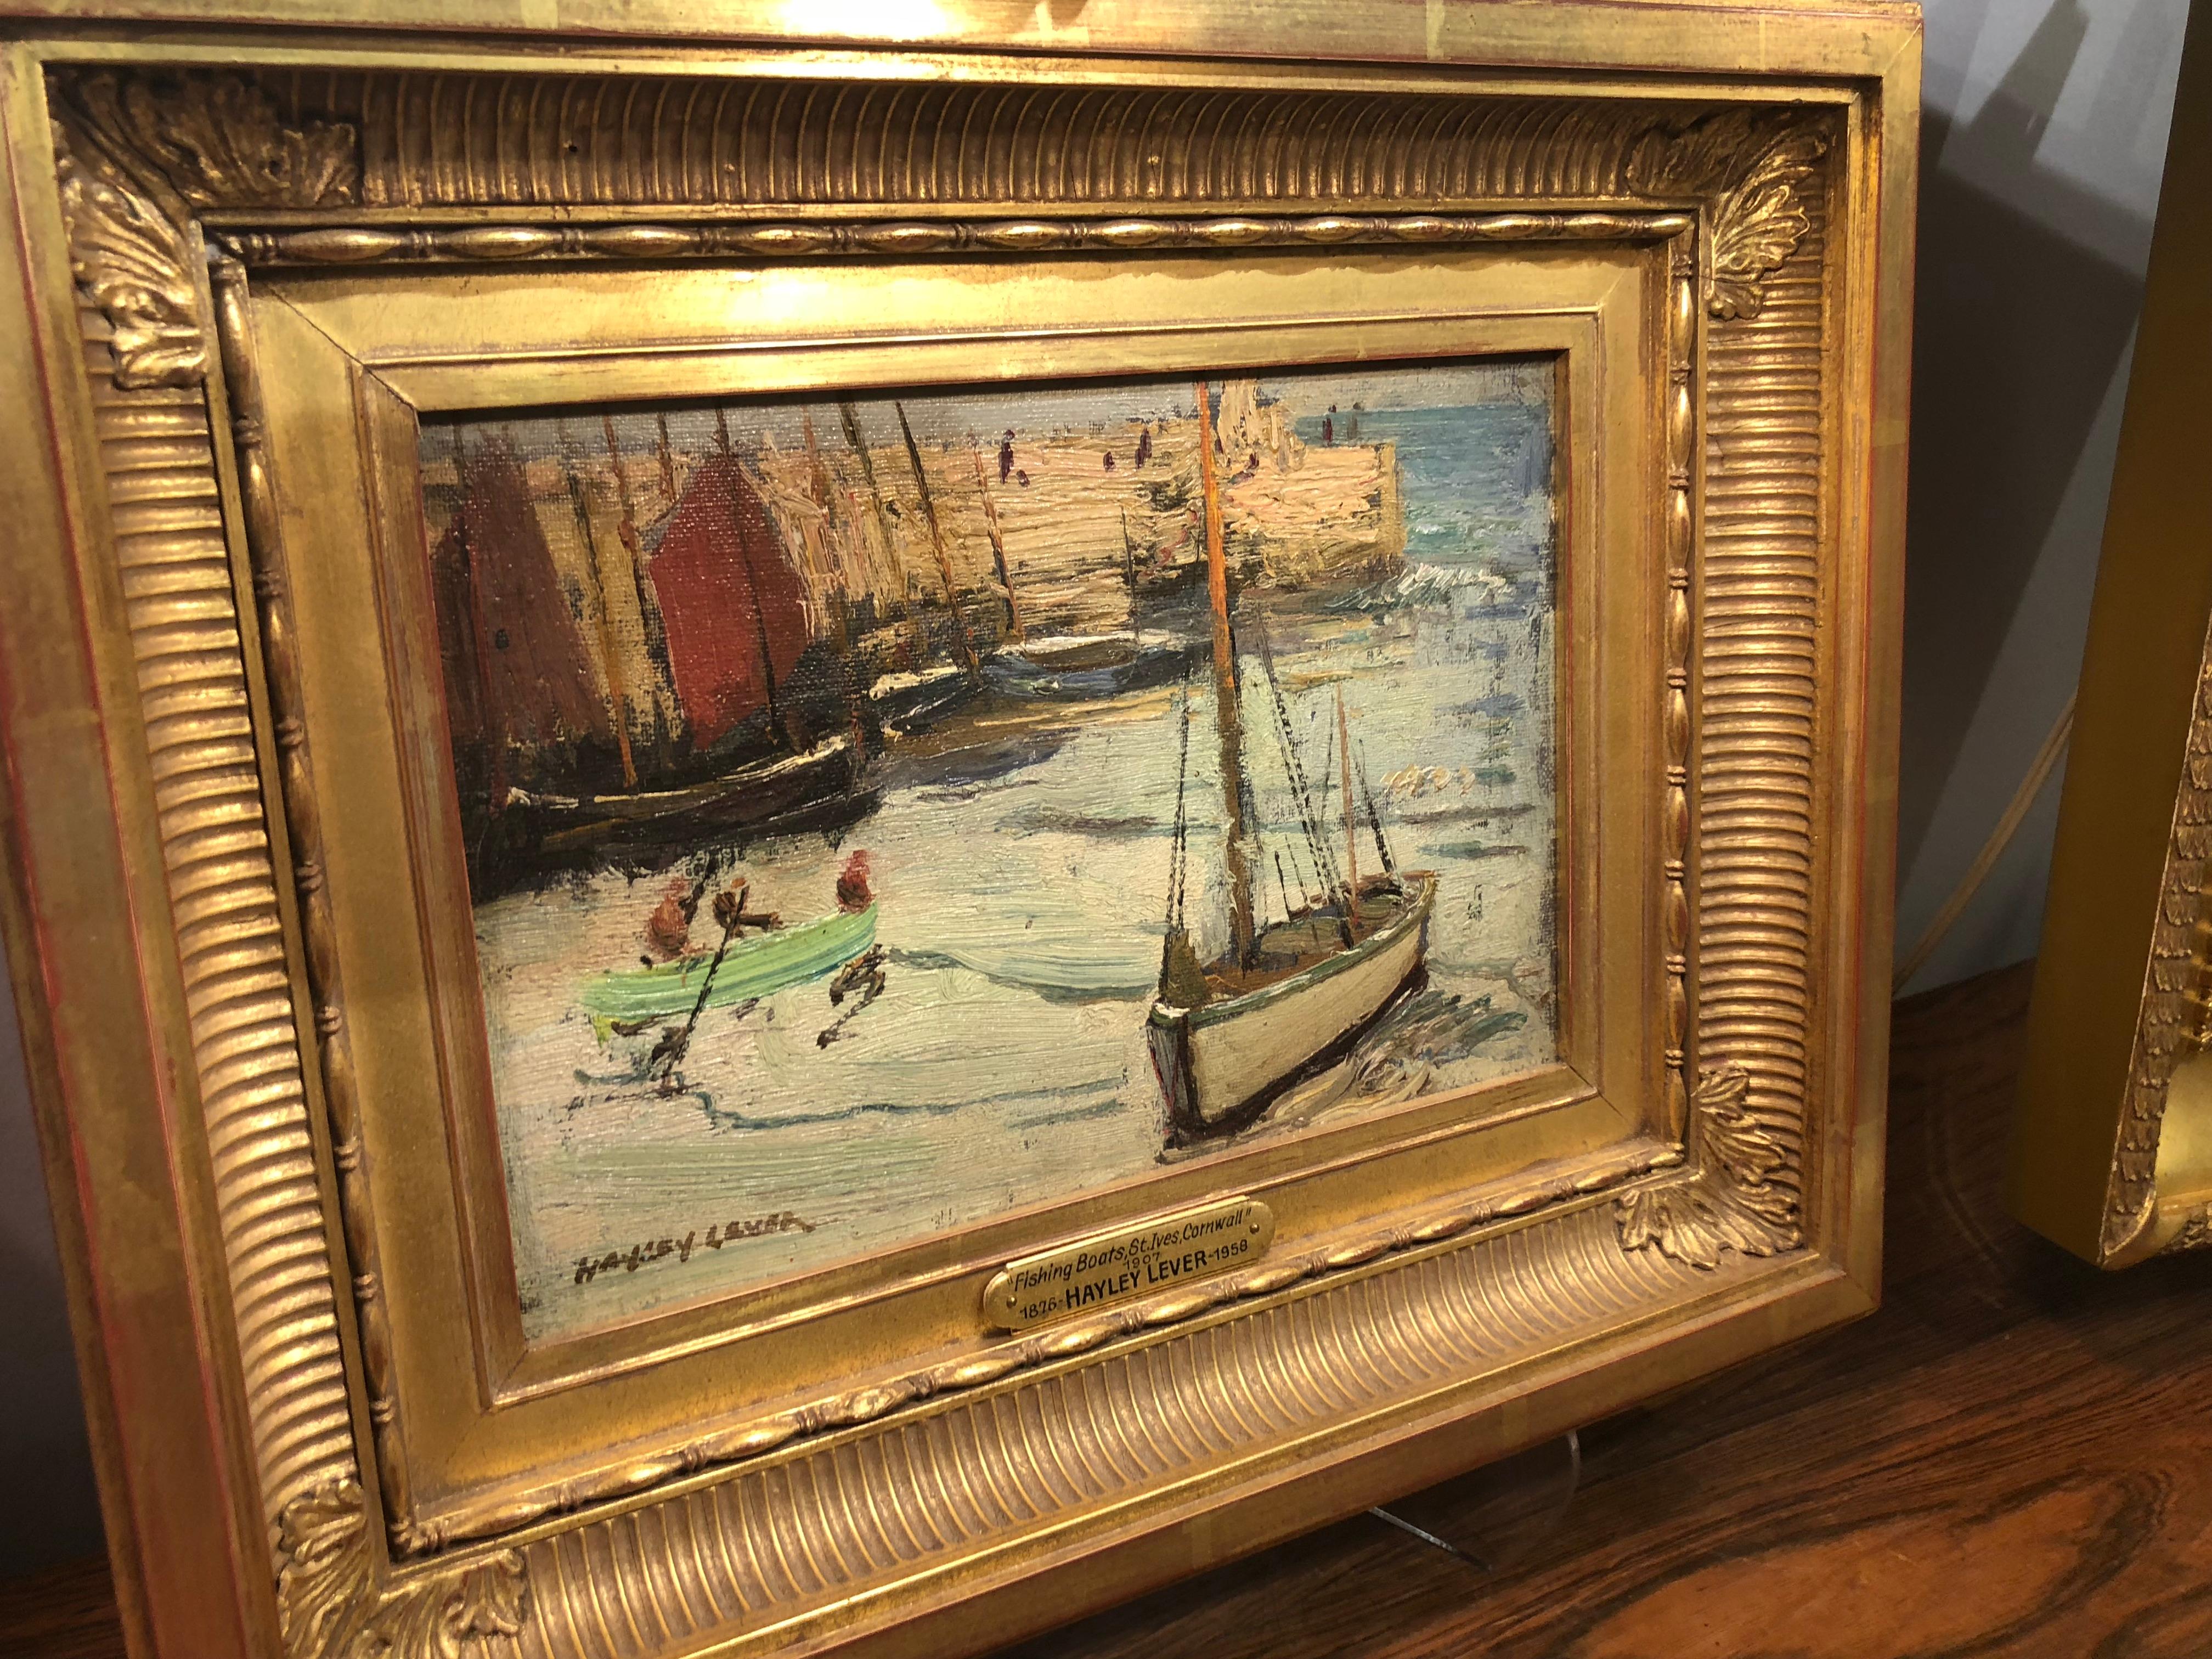 Pier de pêche - St. Ives, Cornouailles - Impressionnisme Painting par Richard Hayley Lever